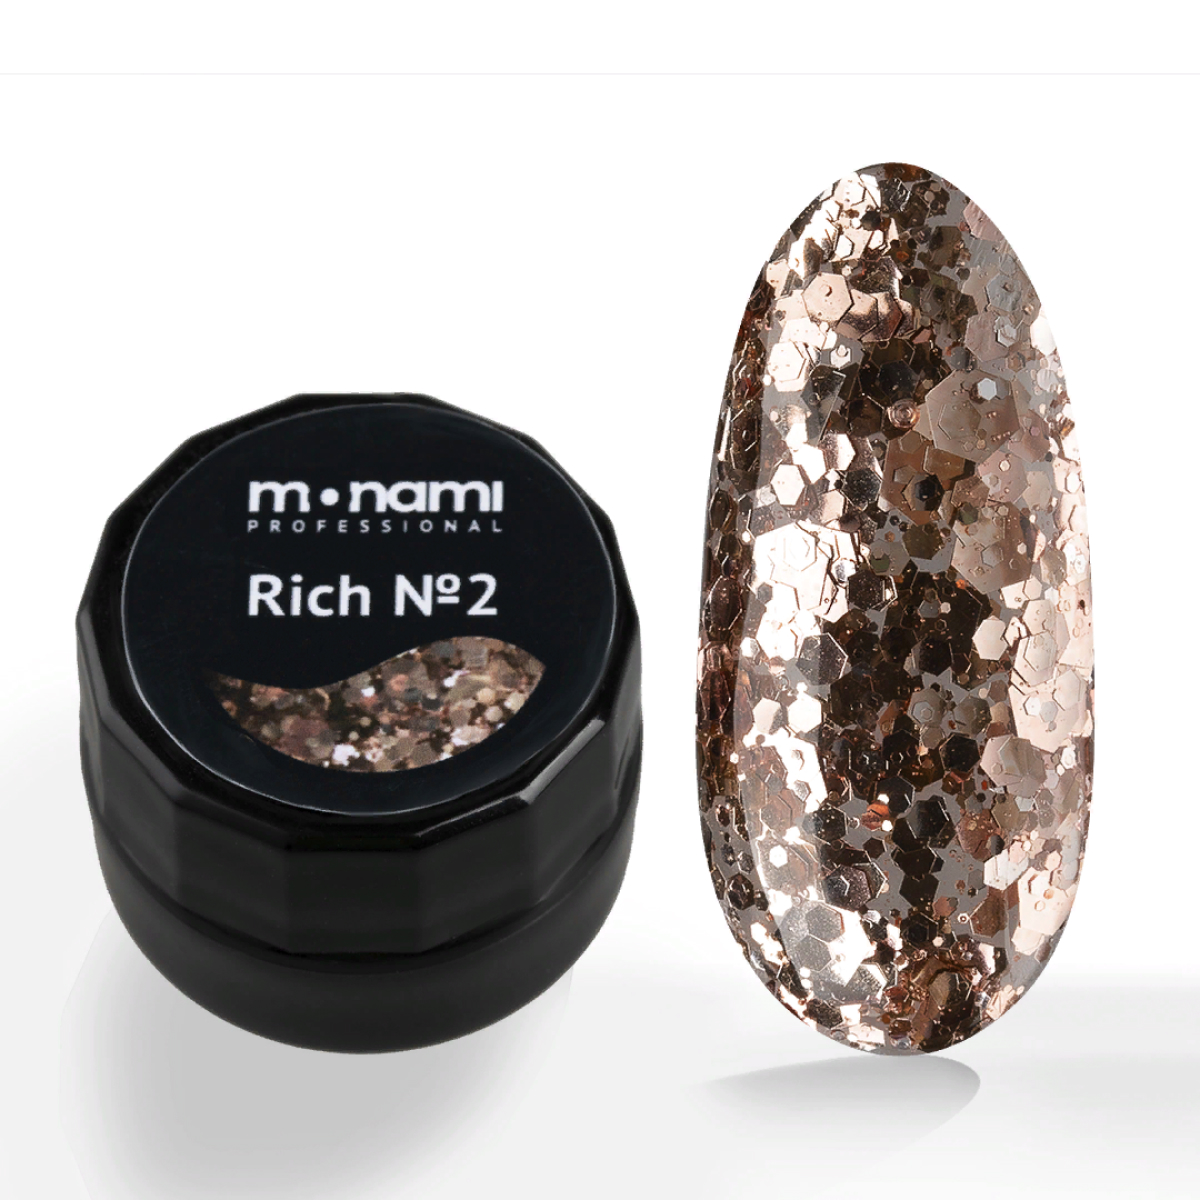 Гель-лак для ногтей Monami Rich с бронзовыми блестками разного размера №2, 5 мл ажурные узоры спицами авторская коллекция